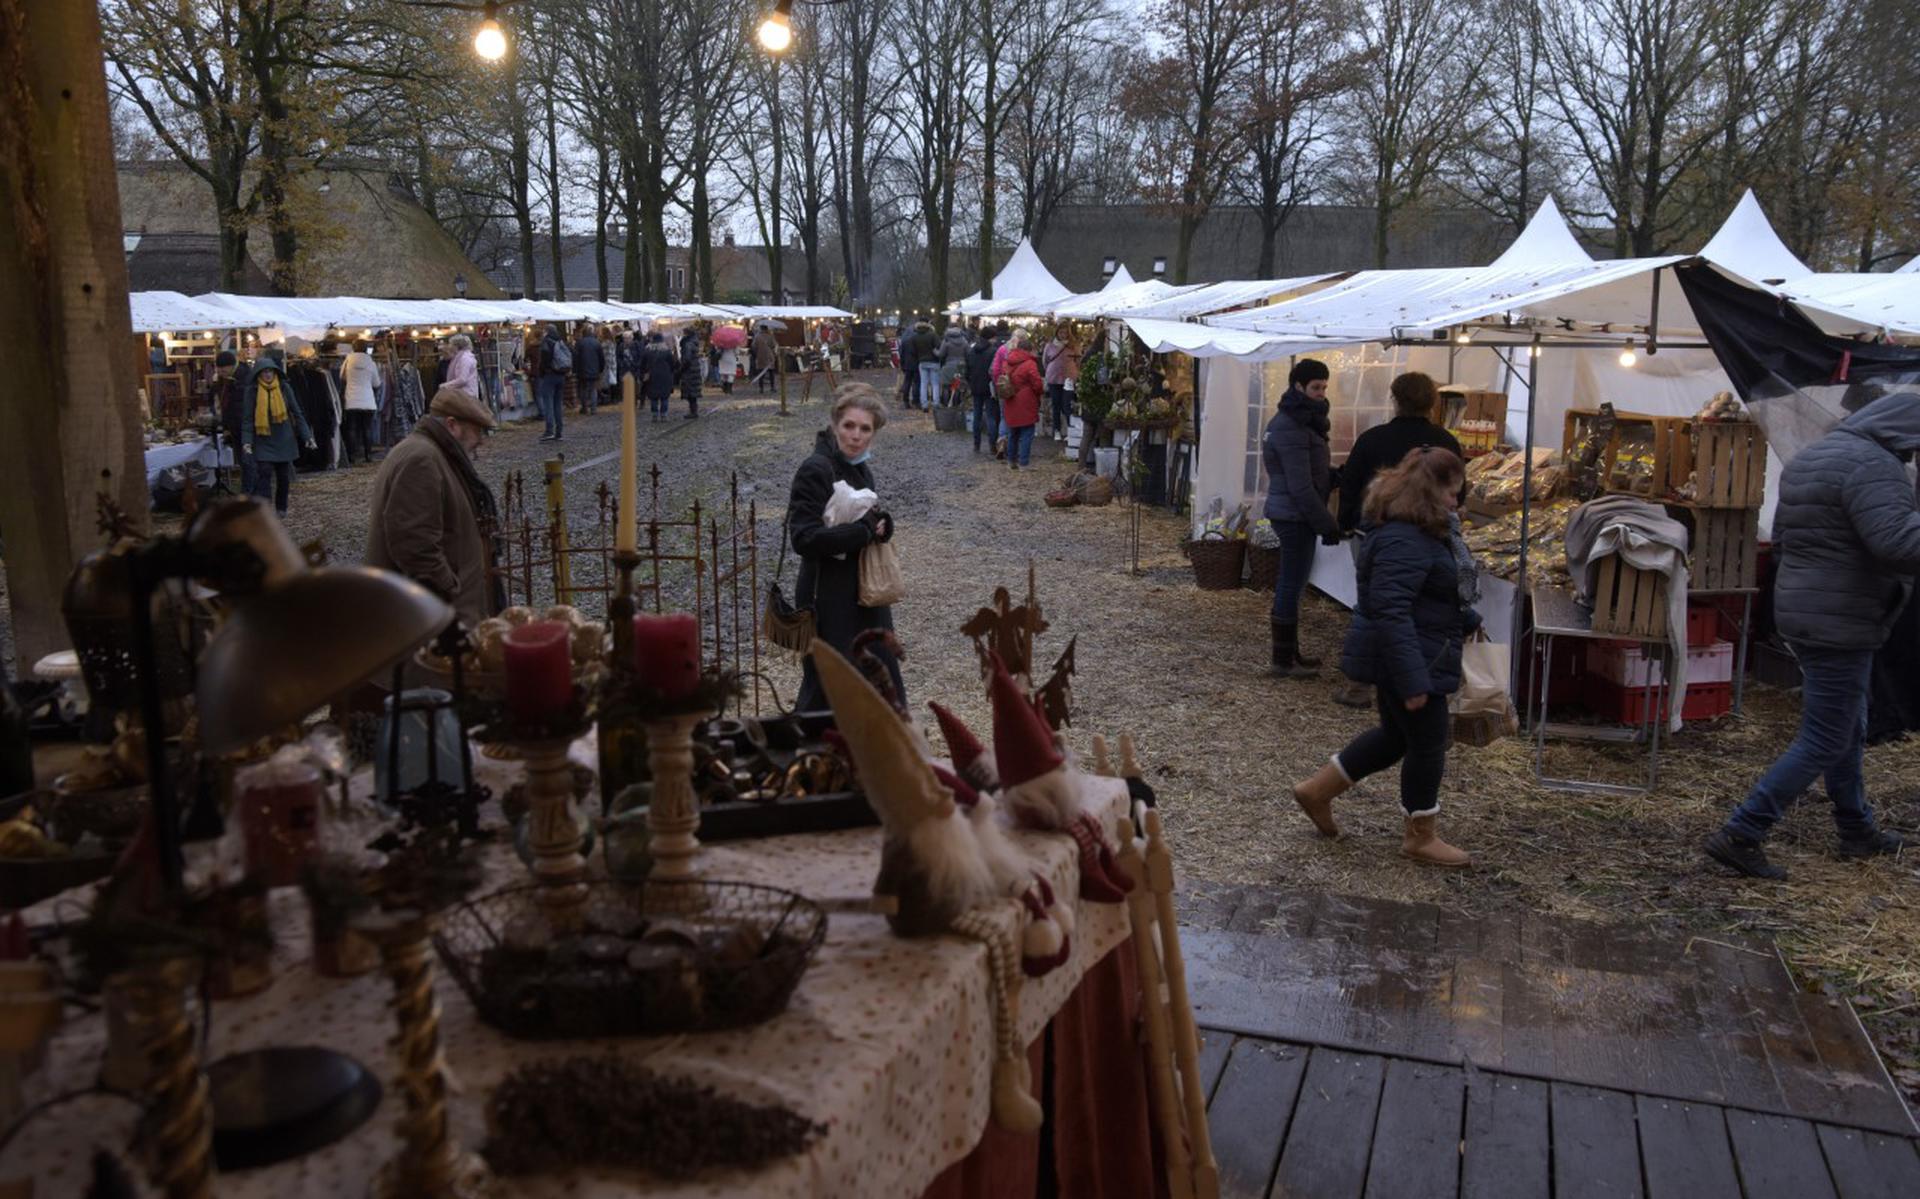 De Winterfair in Orvelte is elk jaar een sfeervol evenement.